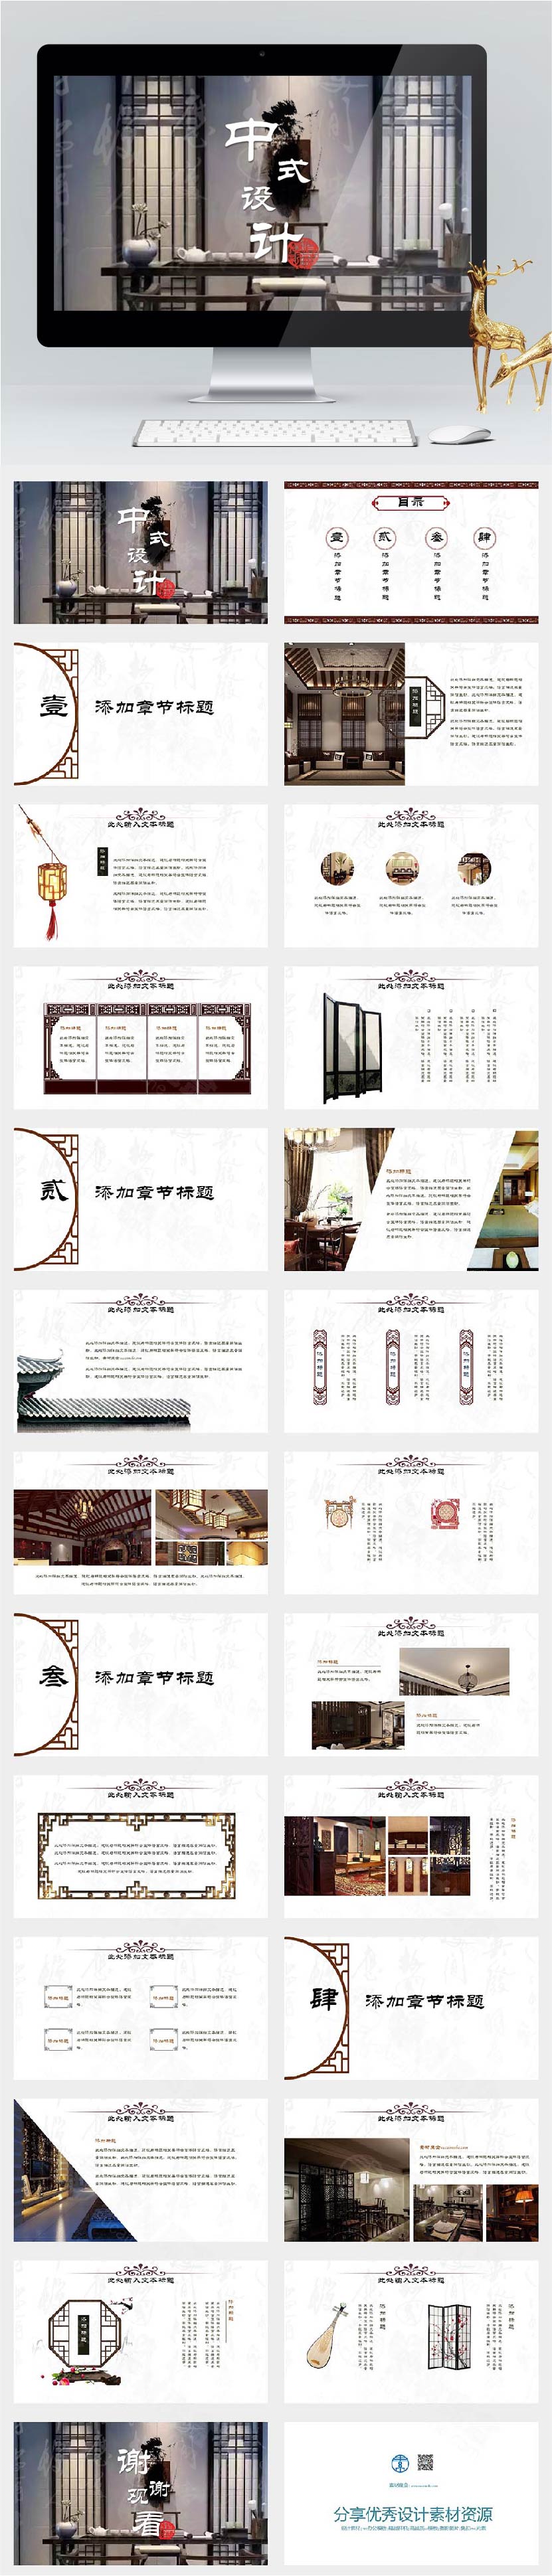 室内装饰中国风设计方案设计PPT模板